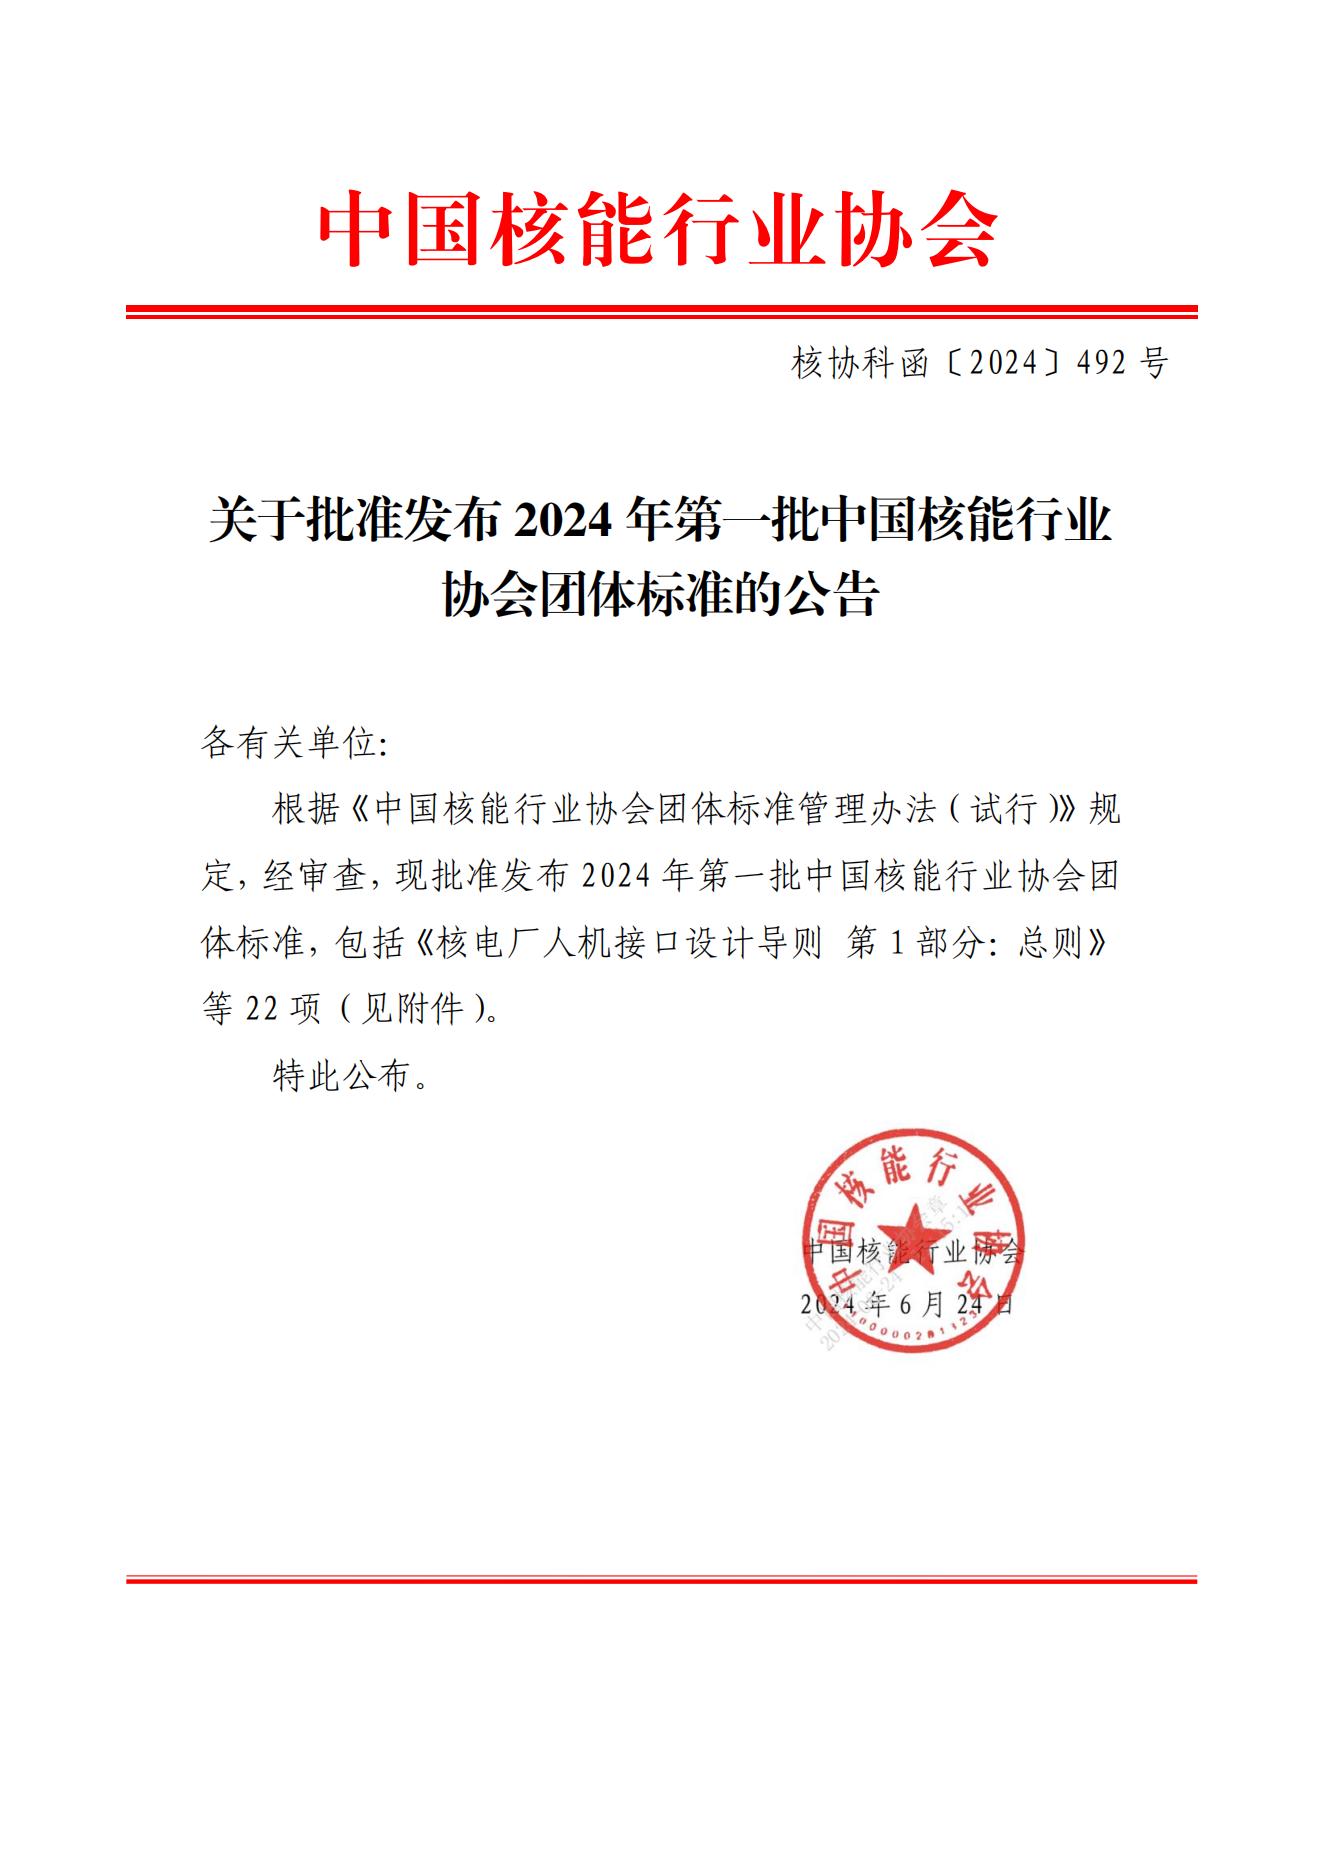 关于批准发布2024年第一批中国核能行业协会团体标准的公告-update_00.jpg